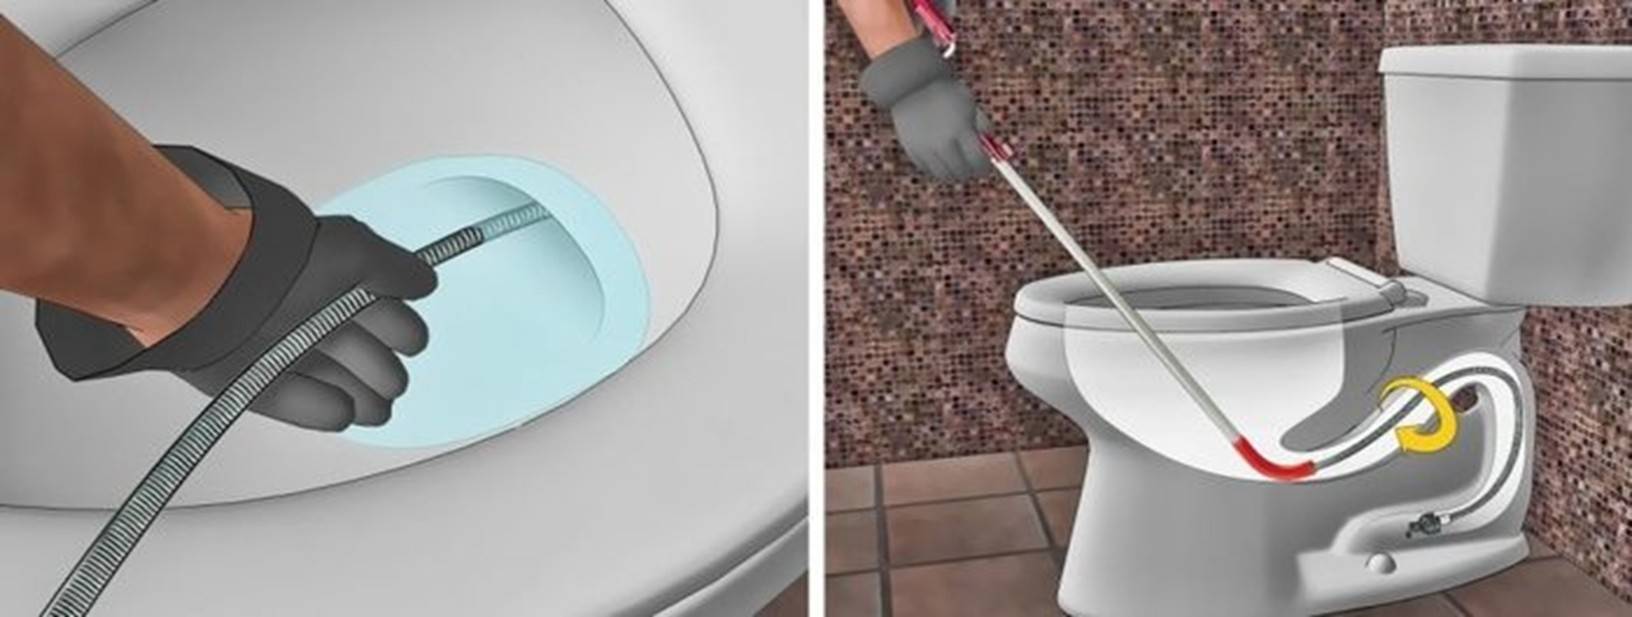 Засорился унитаз: что делать, как удалить засор в домашних условиях, как прочистить, если забился туалет, как прочистить, почему засоряется, стоит вода